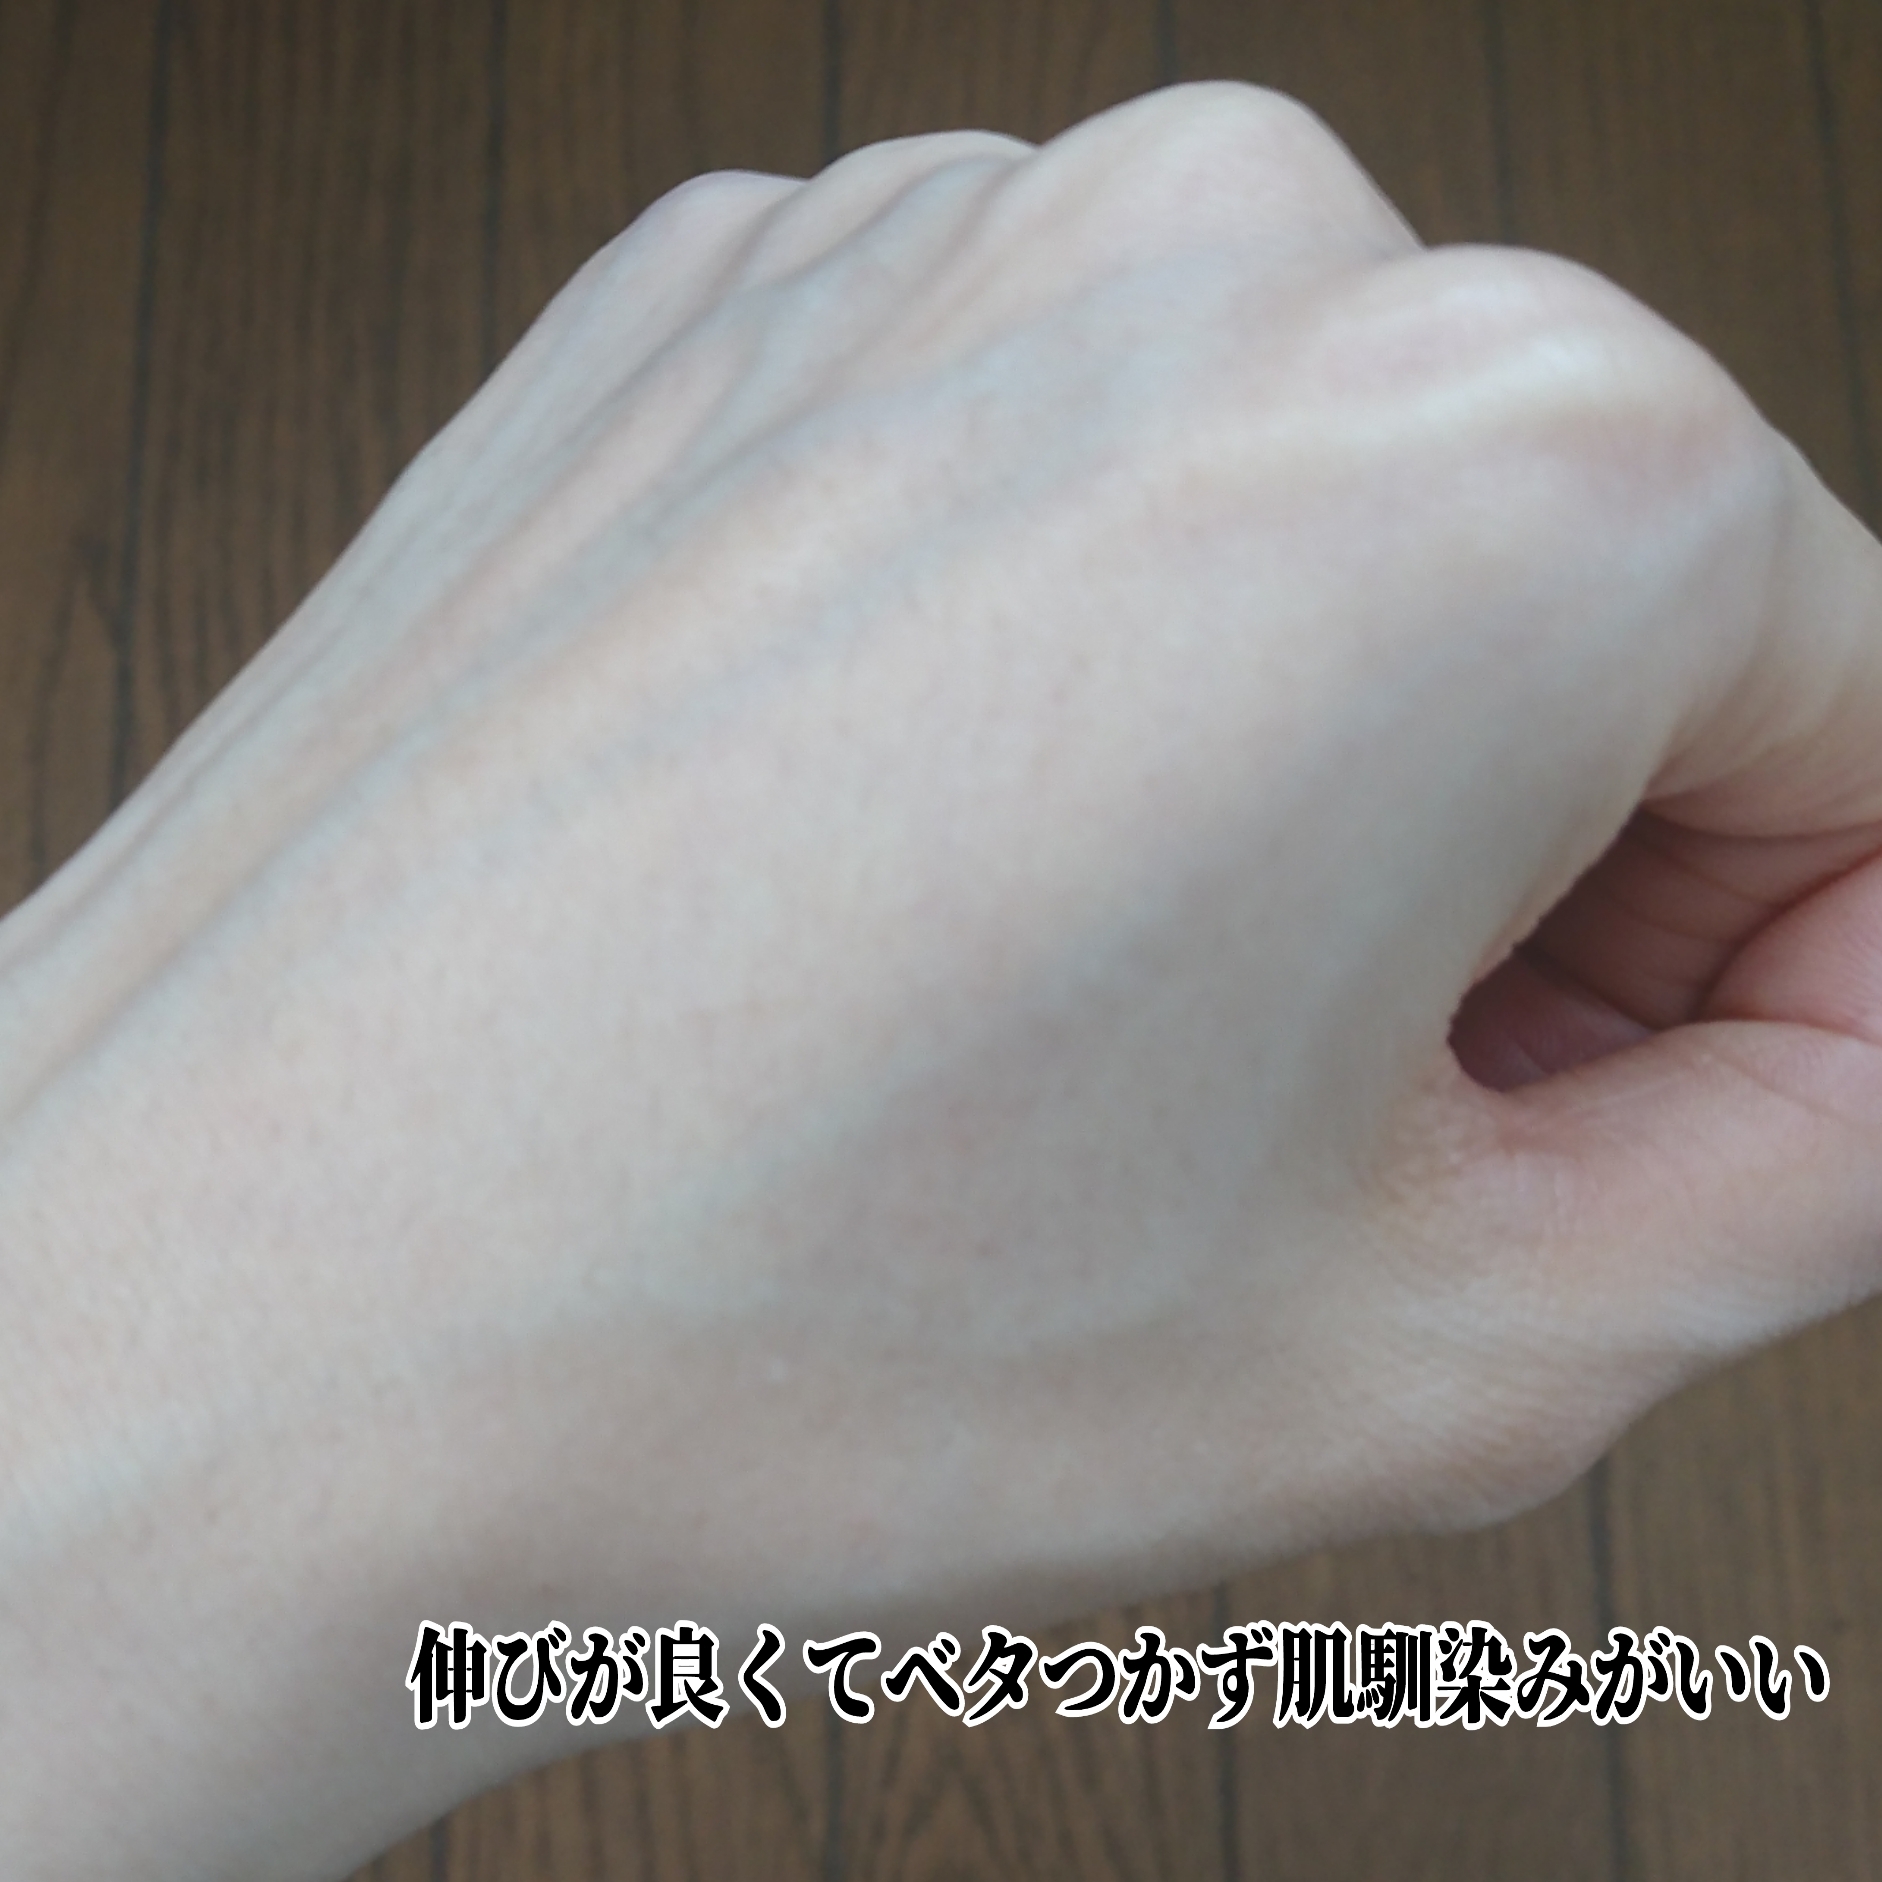 鈴木ハーブ研究所パイナップル豆乳ローションプレミアムを使ったYuKaRi♡さんのクチコミ画像5